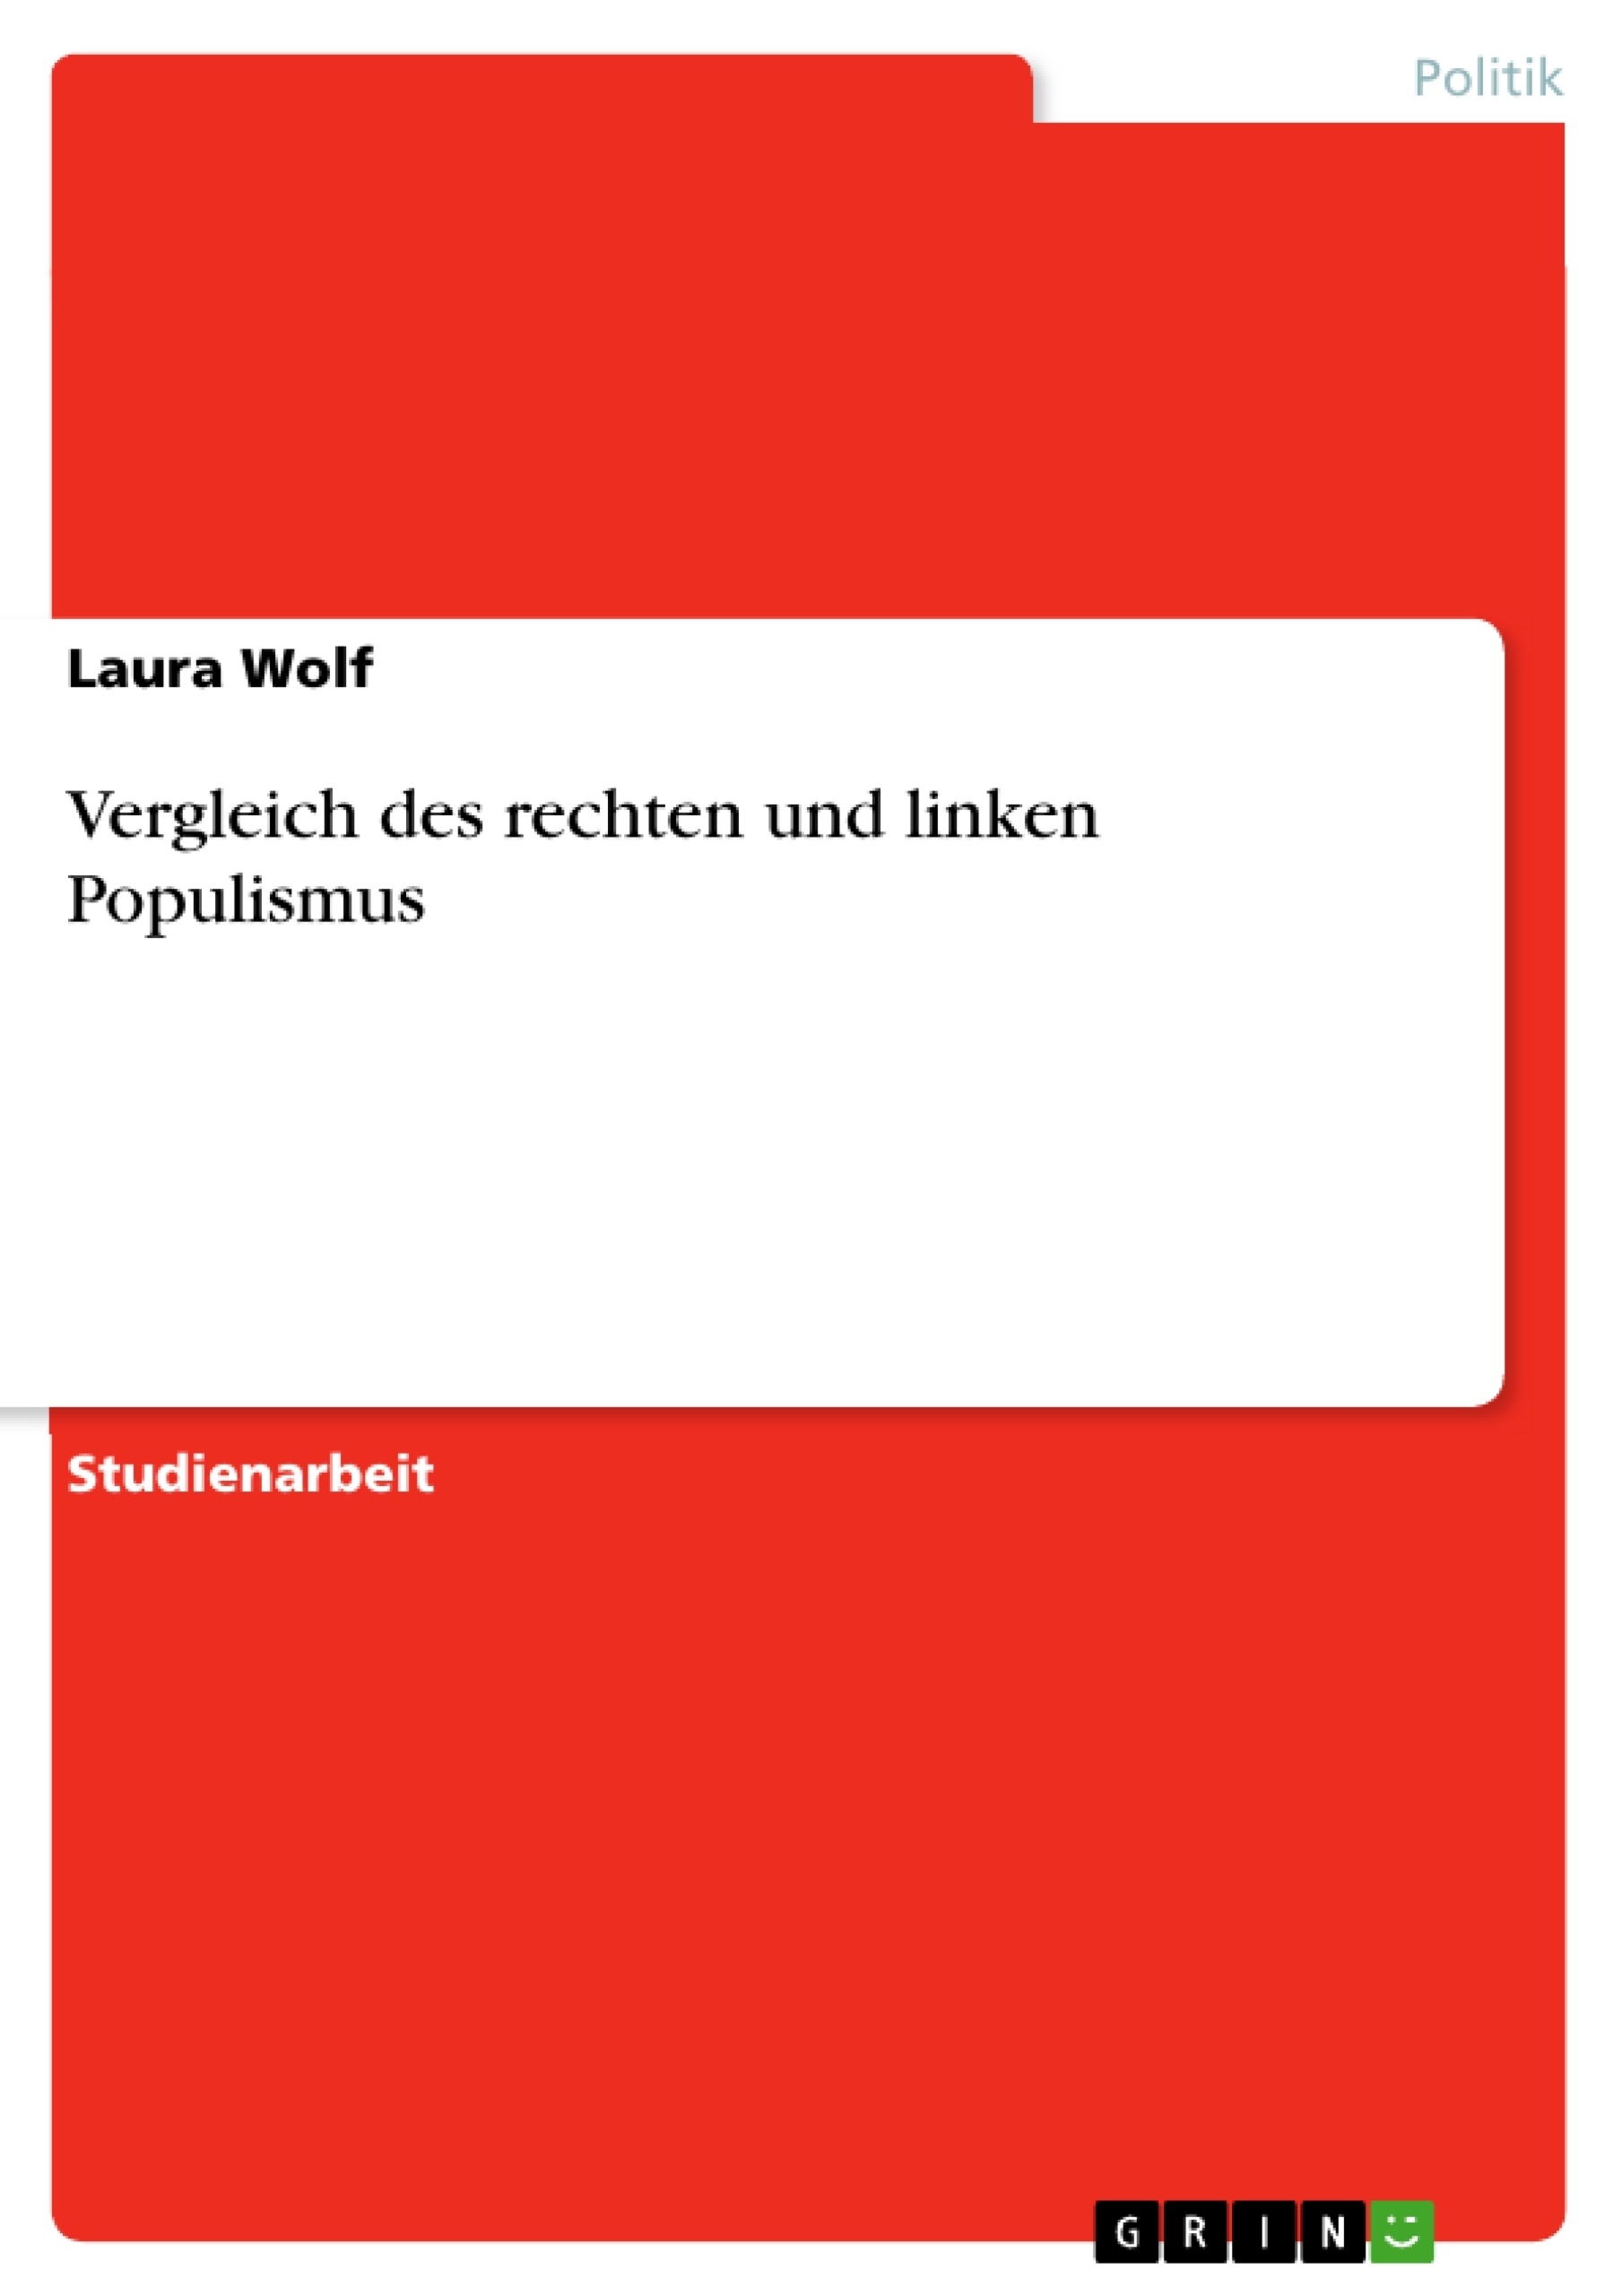 Título: Vergleich des rechten und linken Populismus